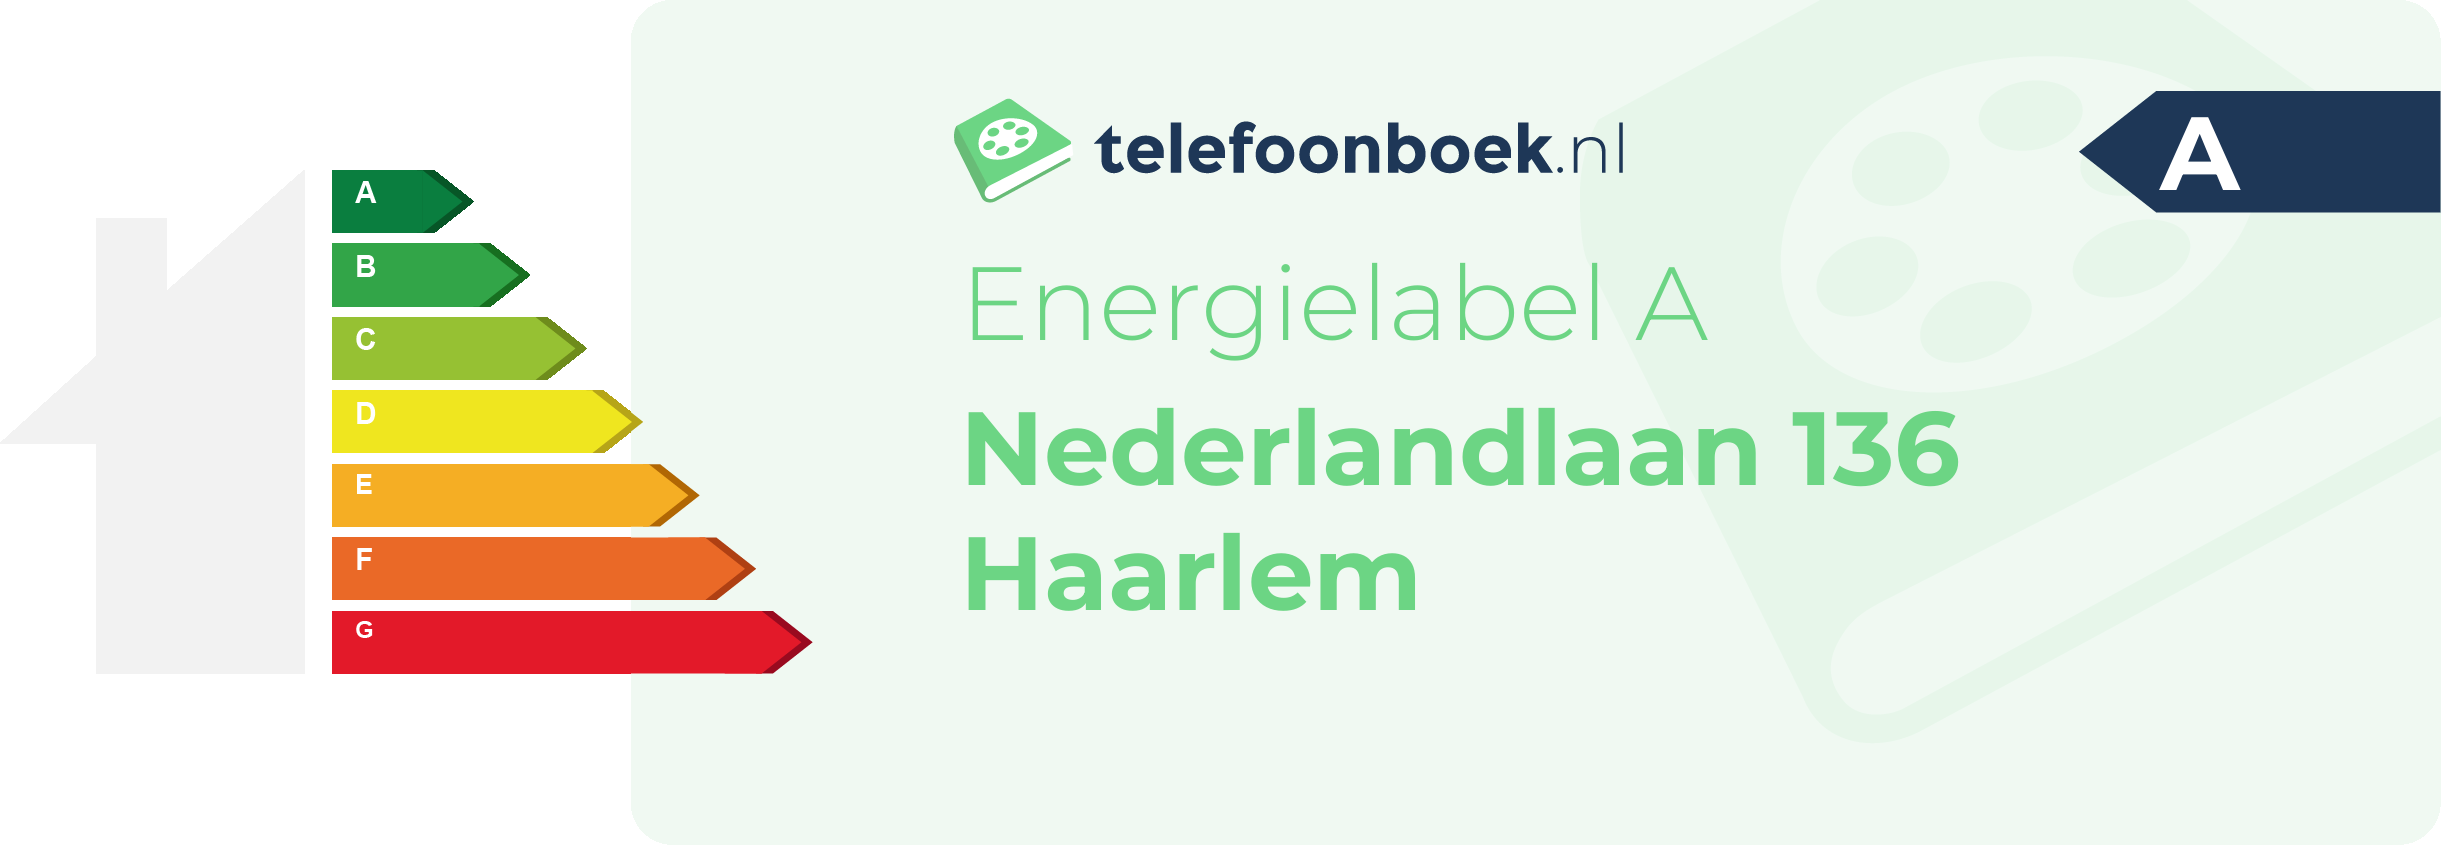 Energielabel Nederlandlaan 136 Haarlem